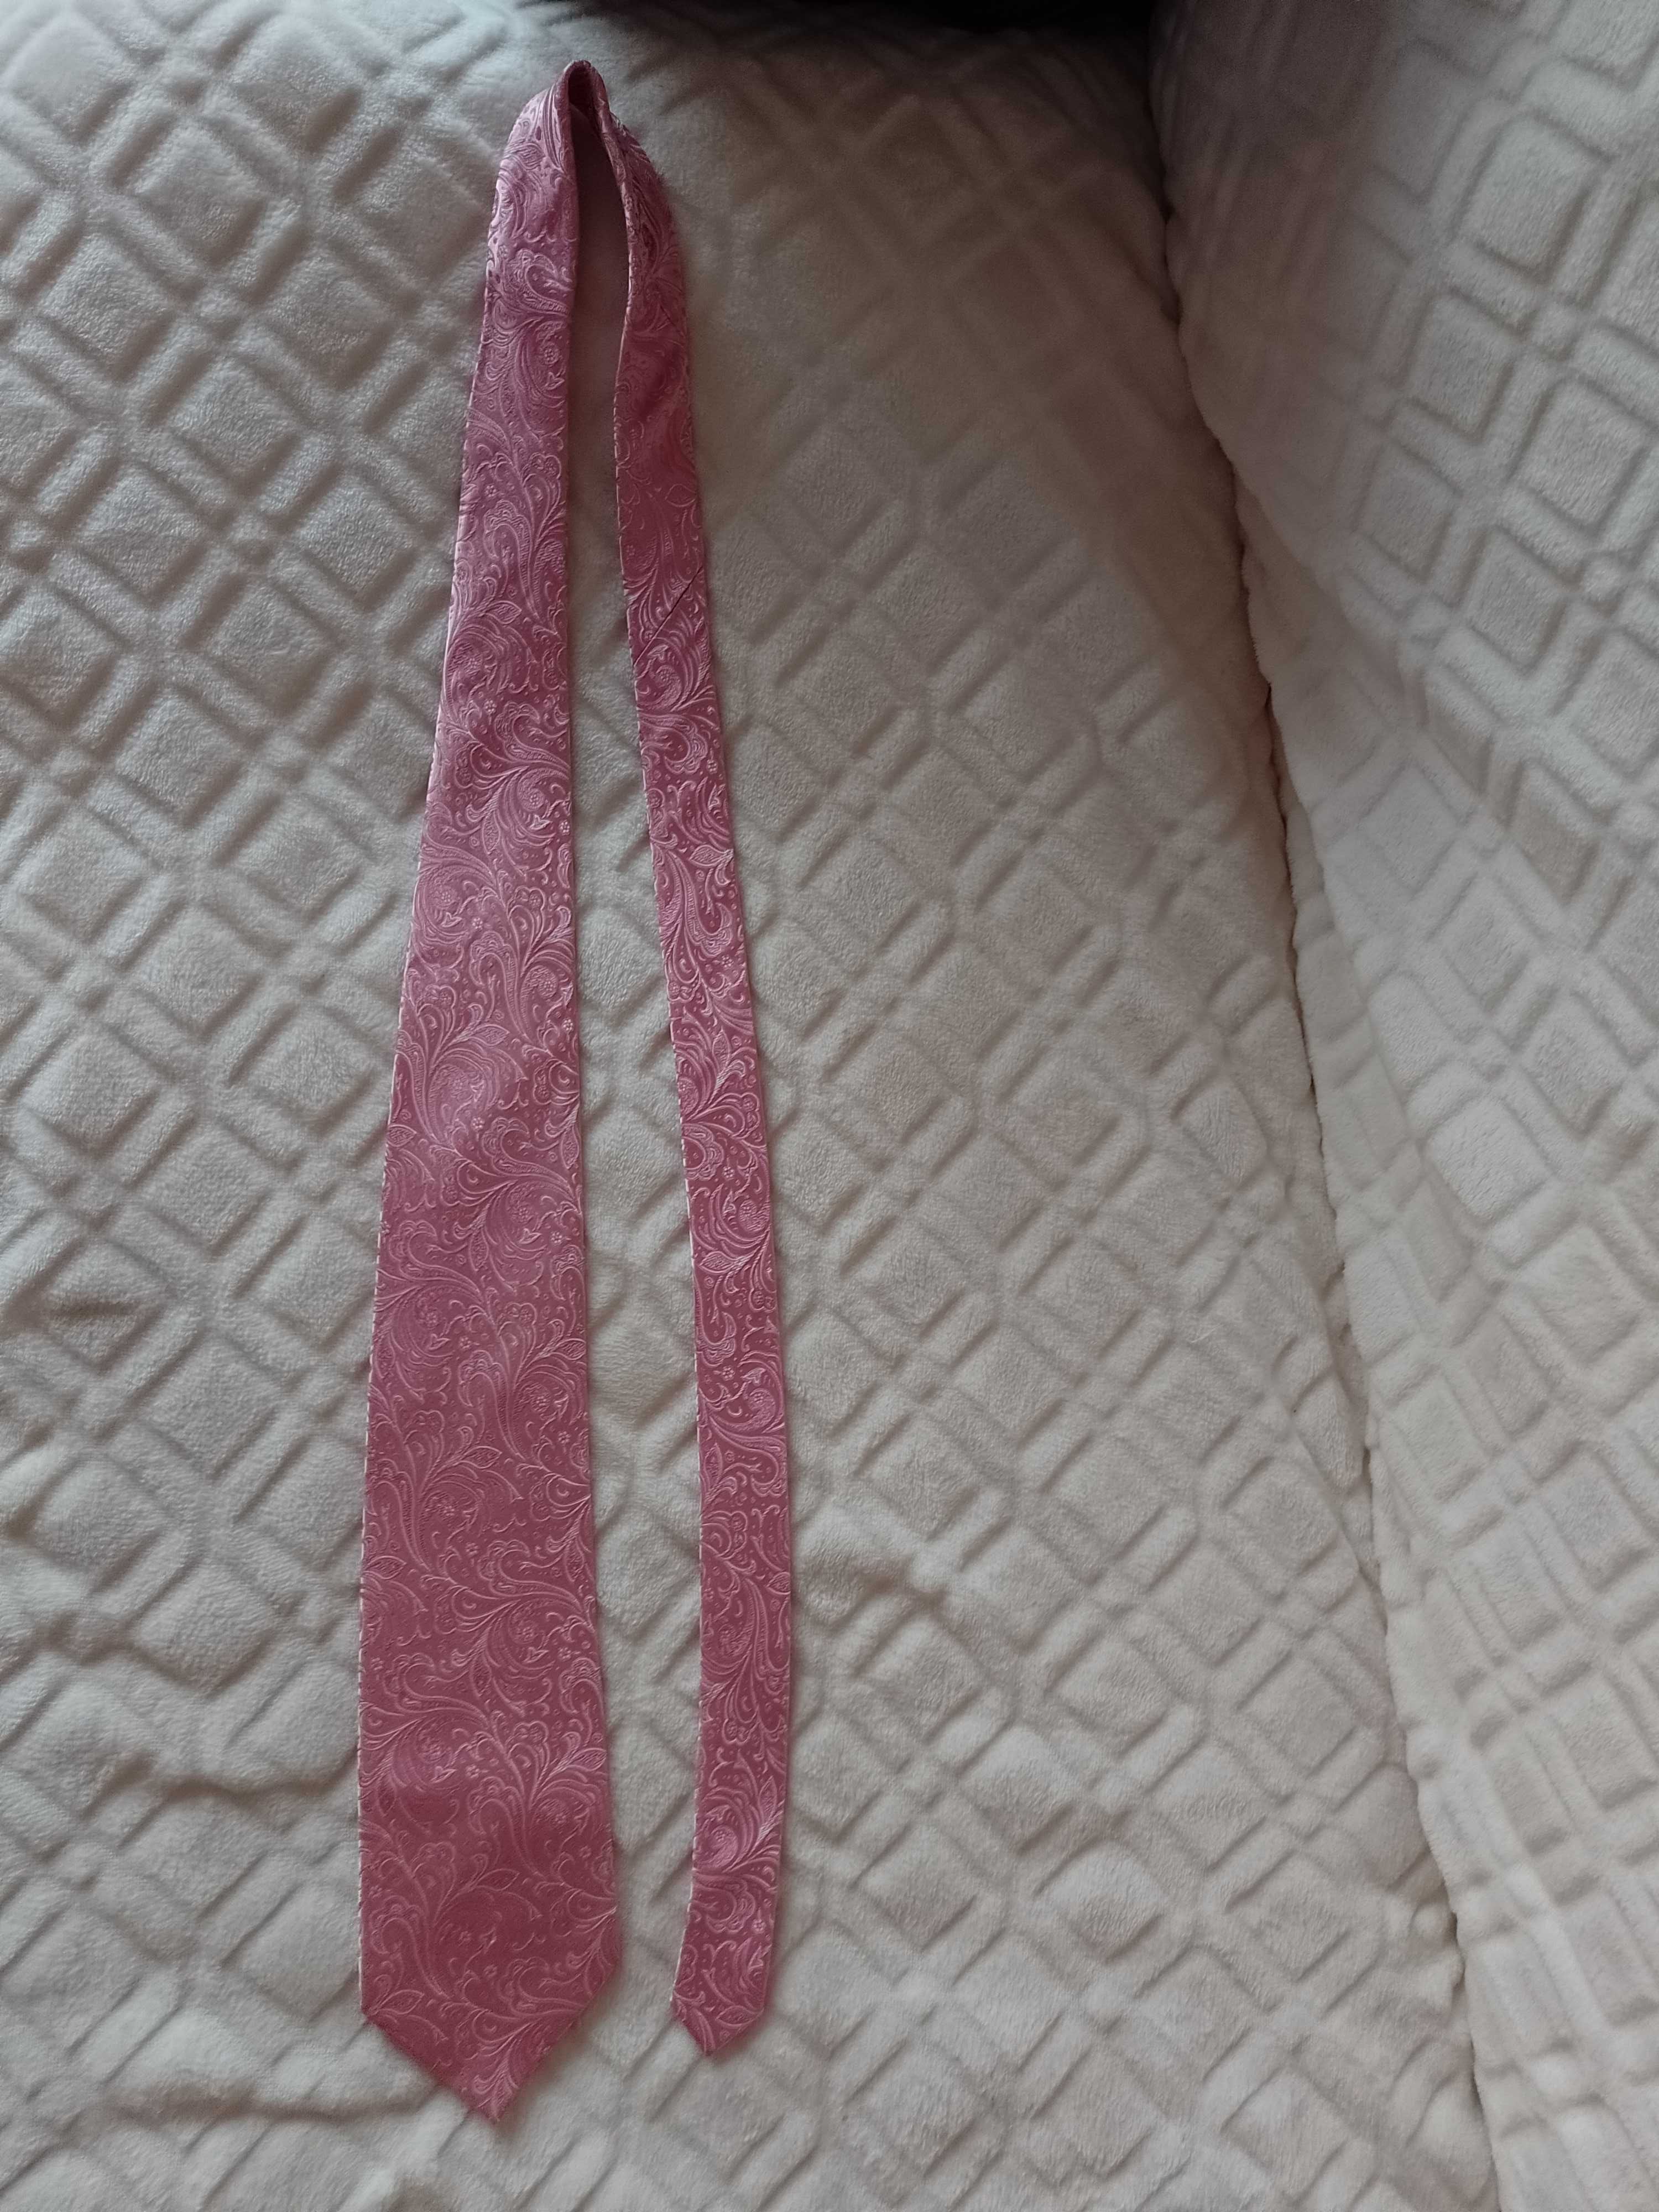 Landisun of Himalaya/Różowy krawat jedwabny ze zdobieniem, jedwab